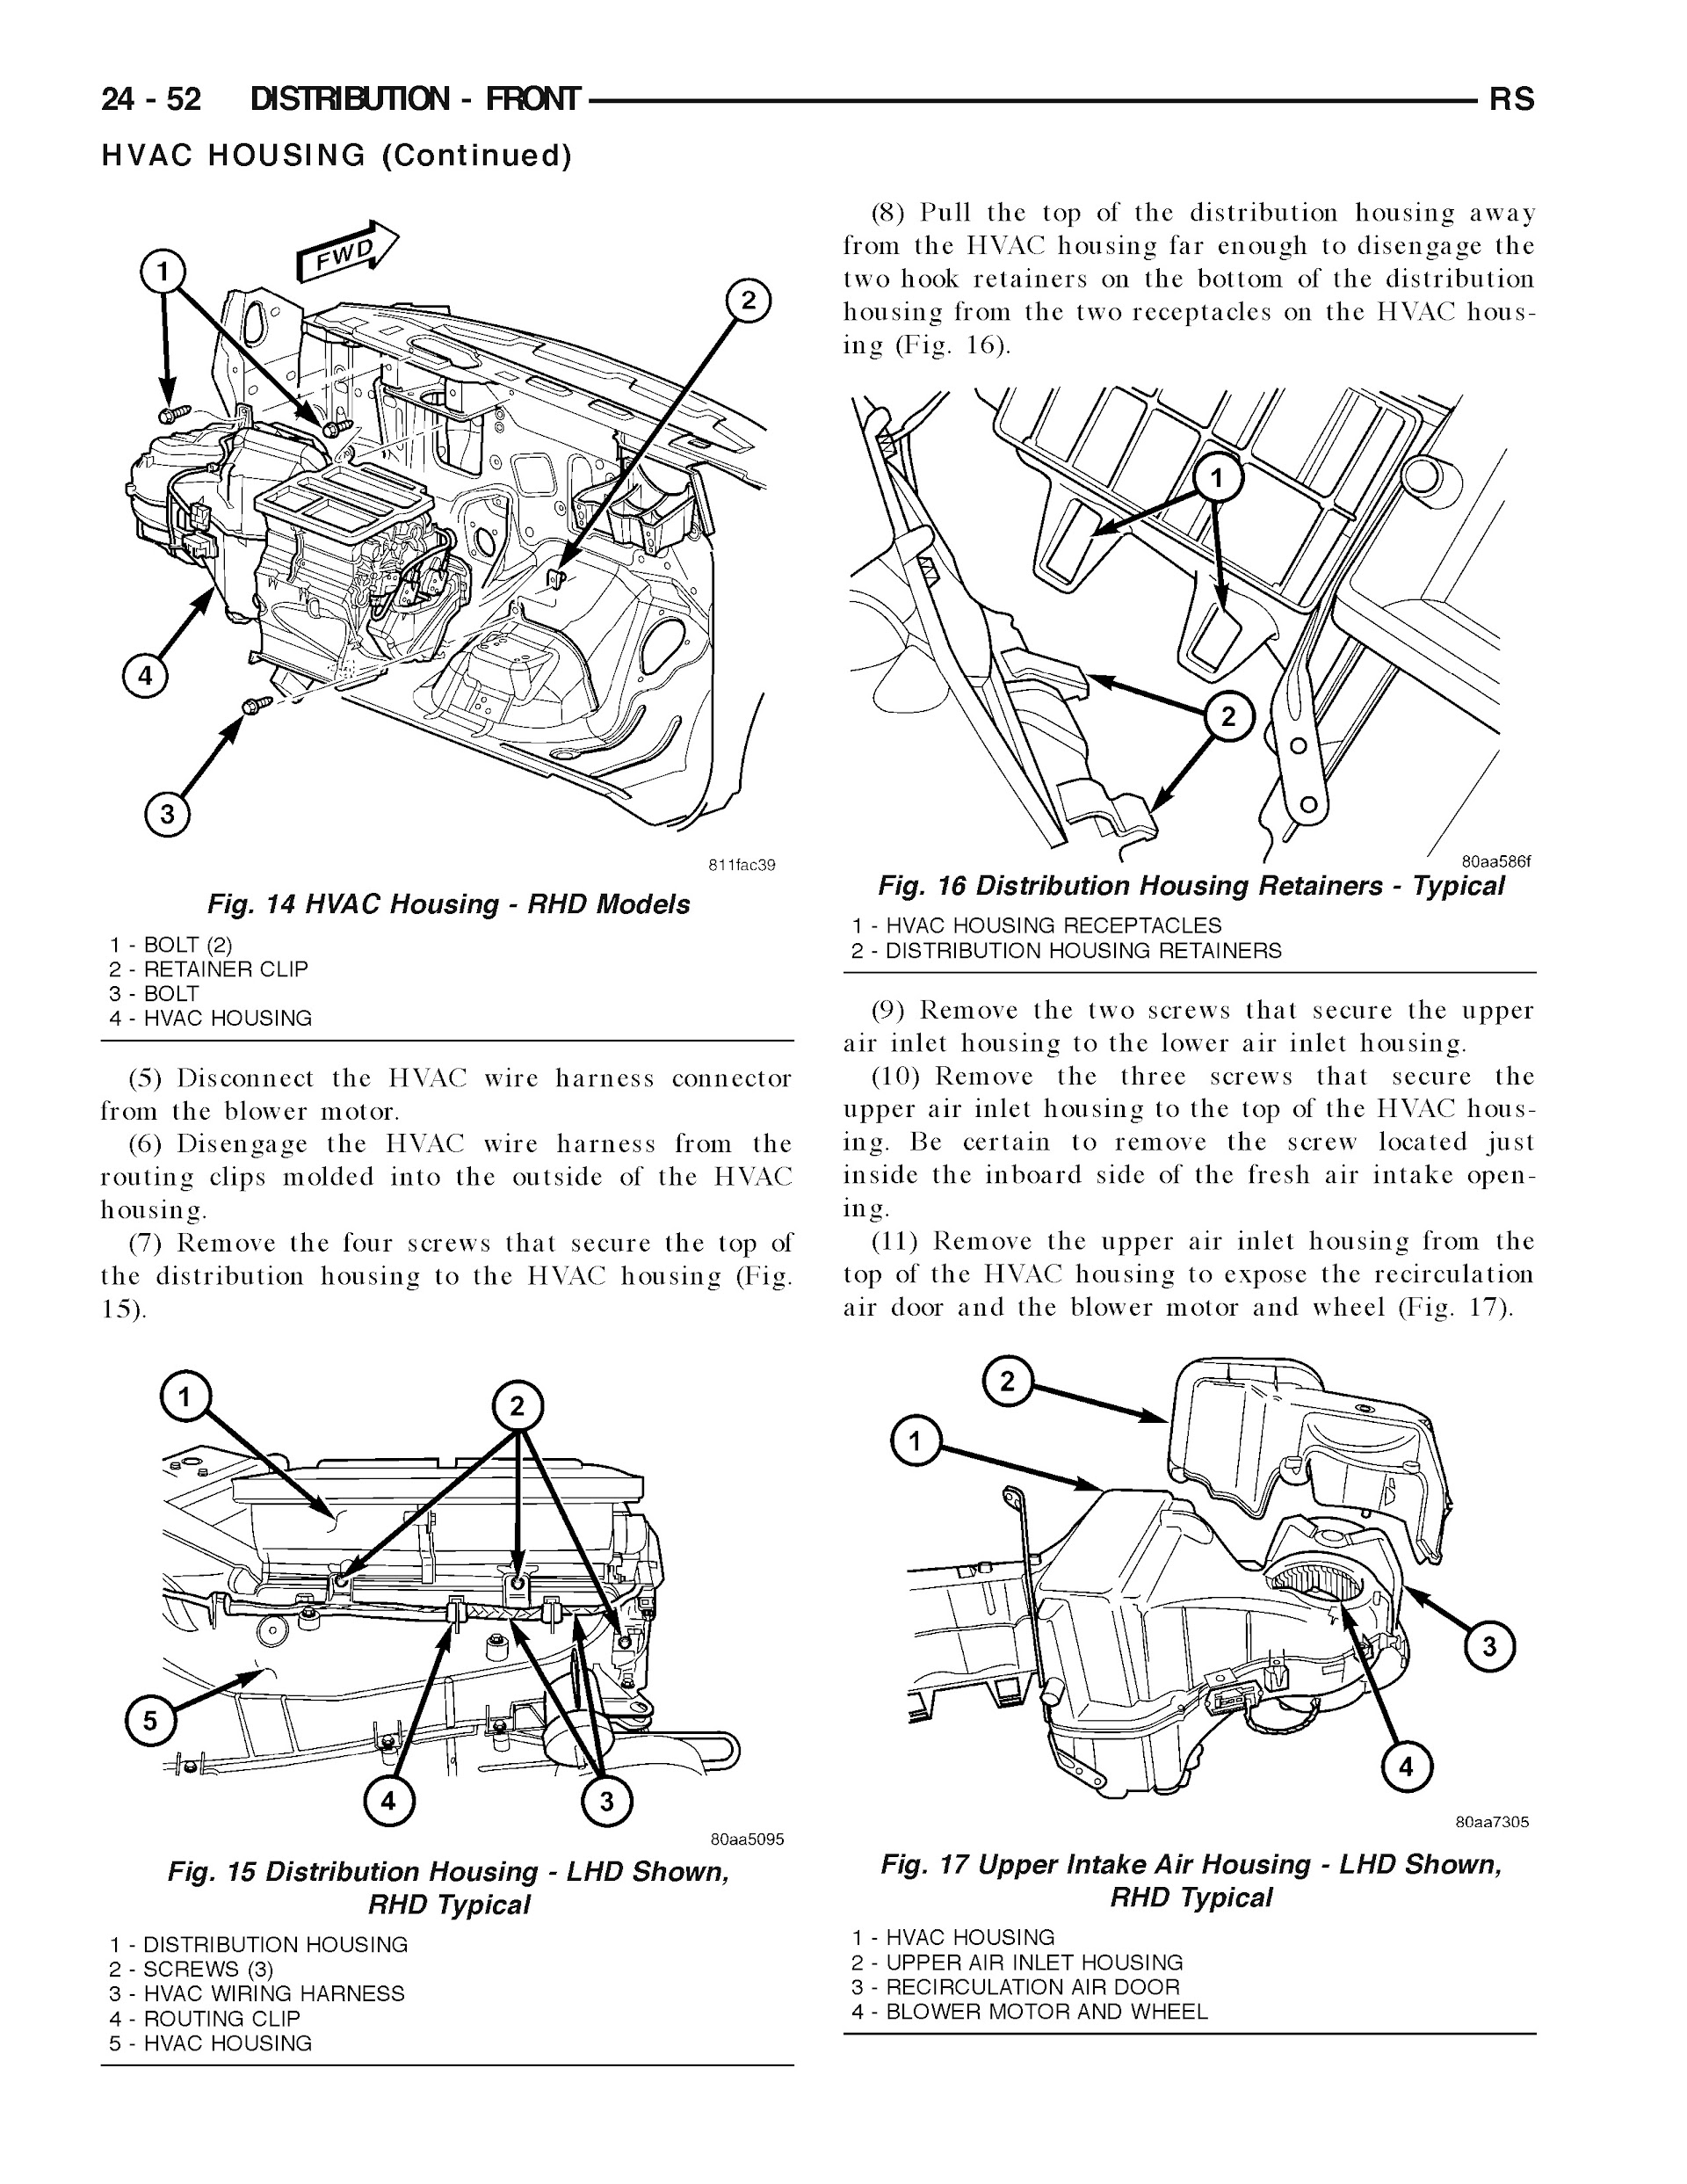 2005-2006 Dodge Grand Caravan Repair Manual, Distribution Front